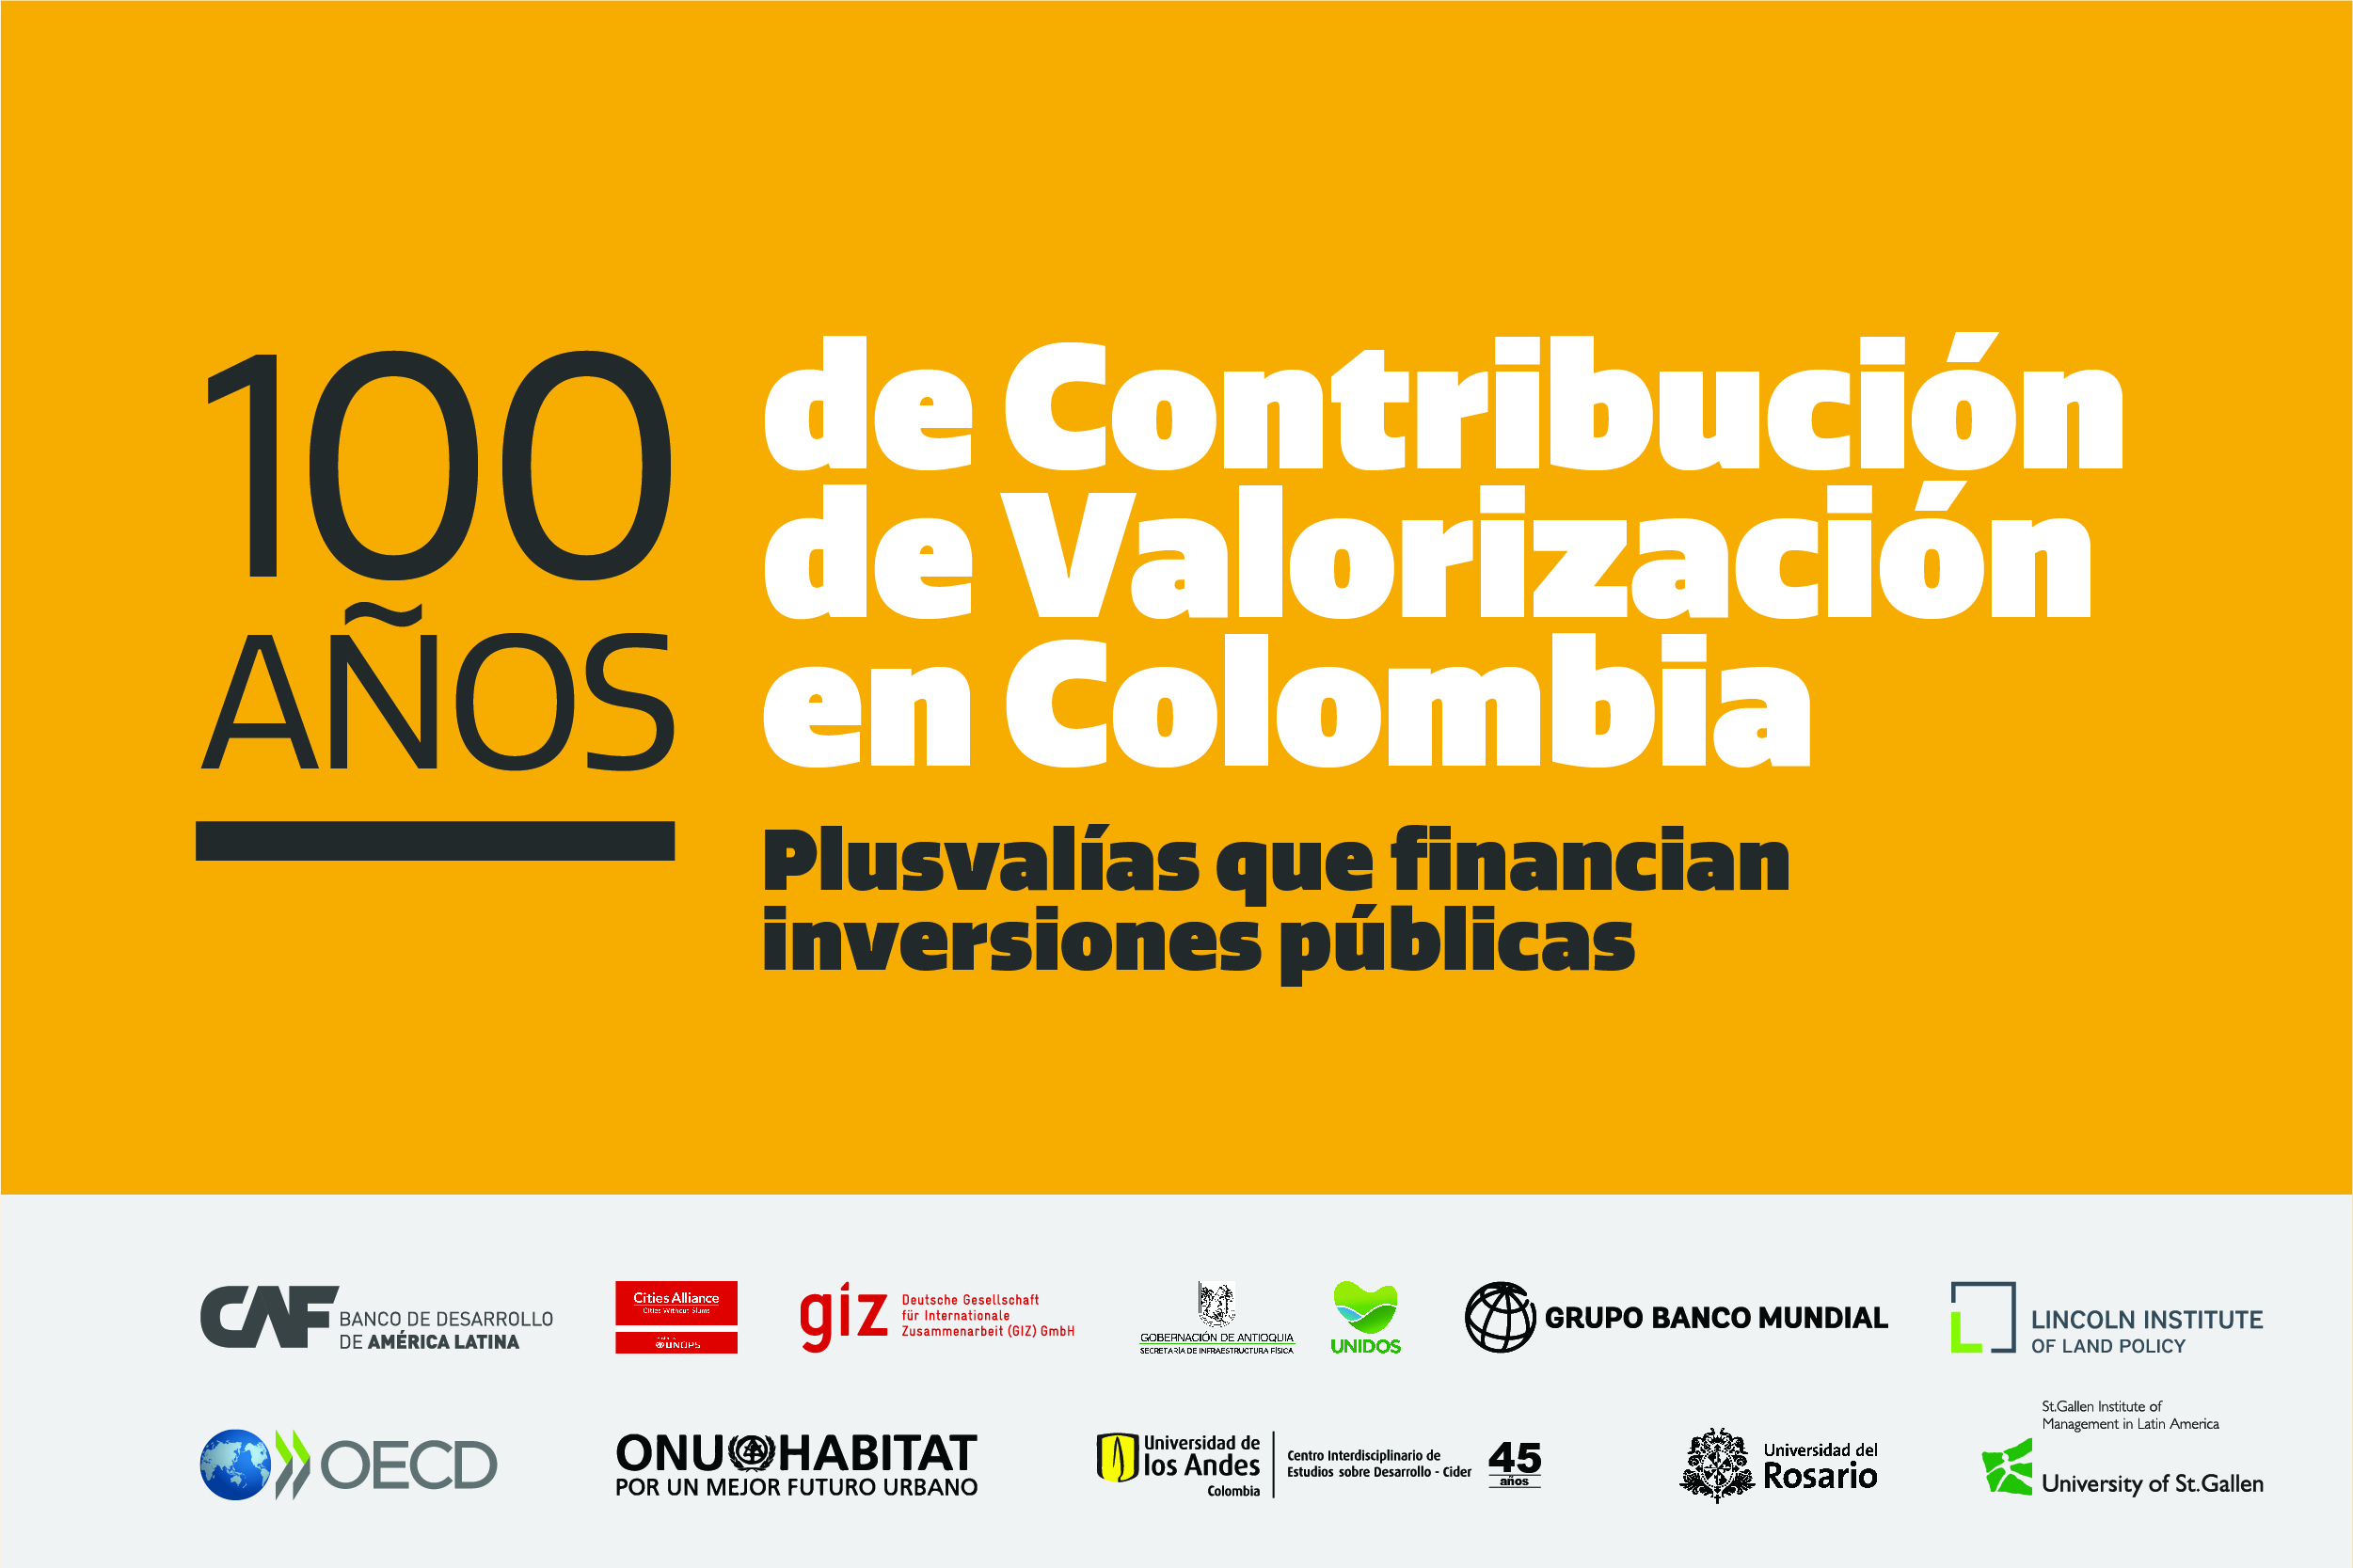 100 años de contribución de valorización en Colombia. Plusvalías que financian inversiones públicas